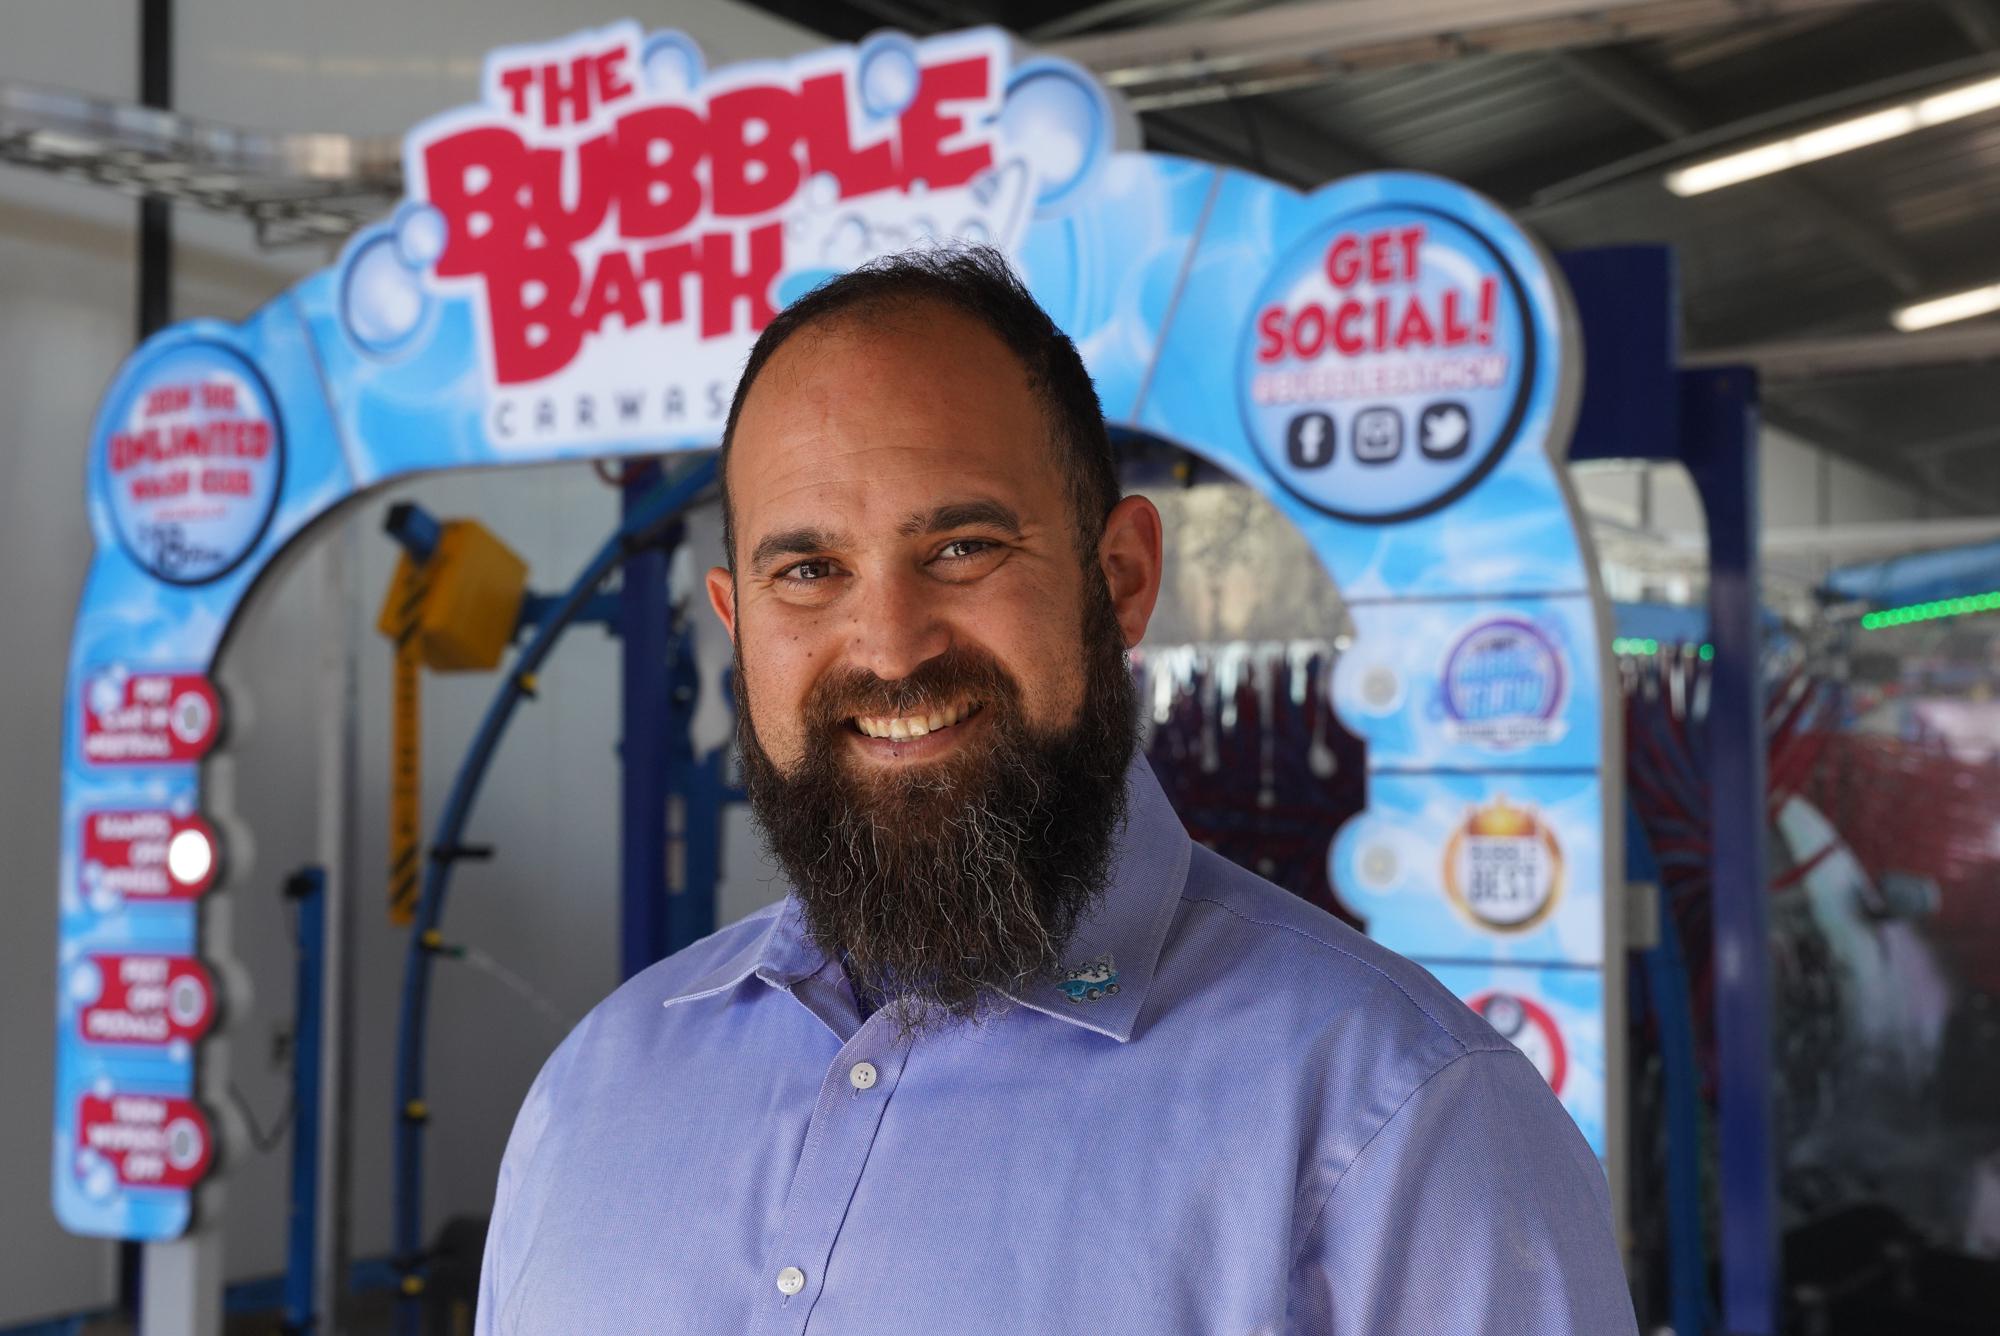 About The Bubble Bath Car Wash